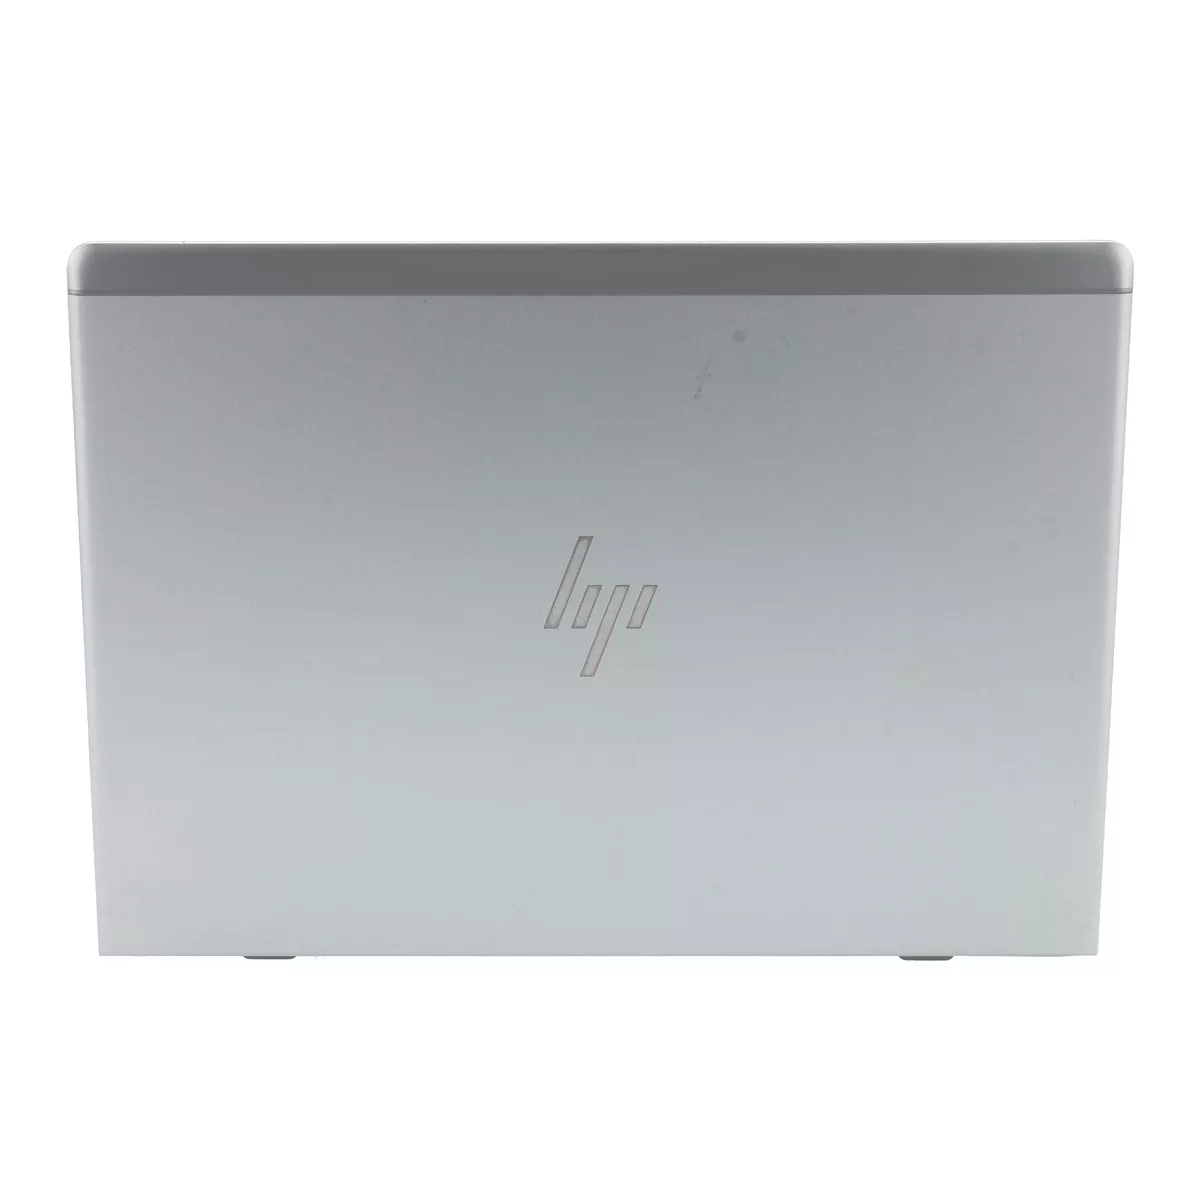 HP EliteBook 830 G5 Core i5 8350U Full-HD 240 M.2 SSD Webcam A